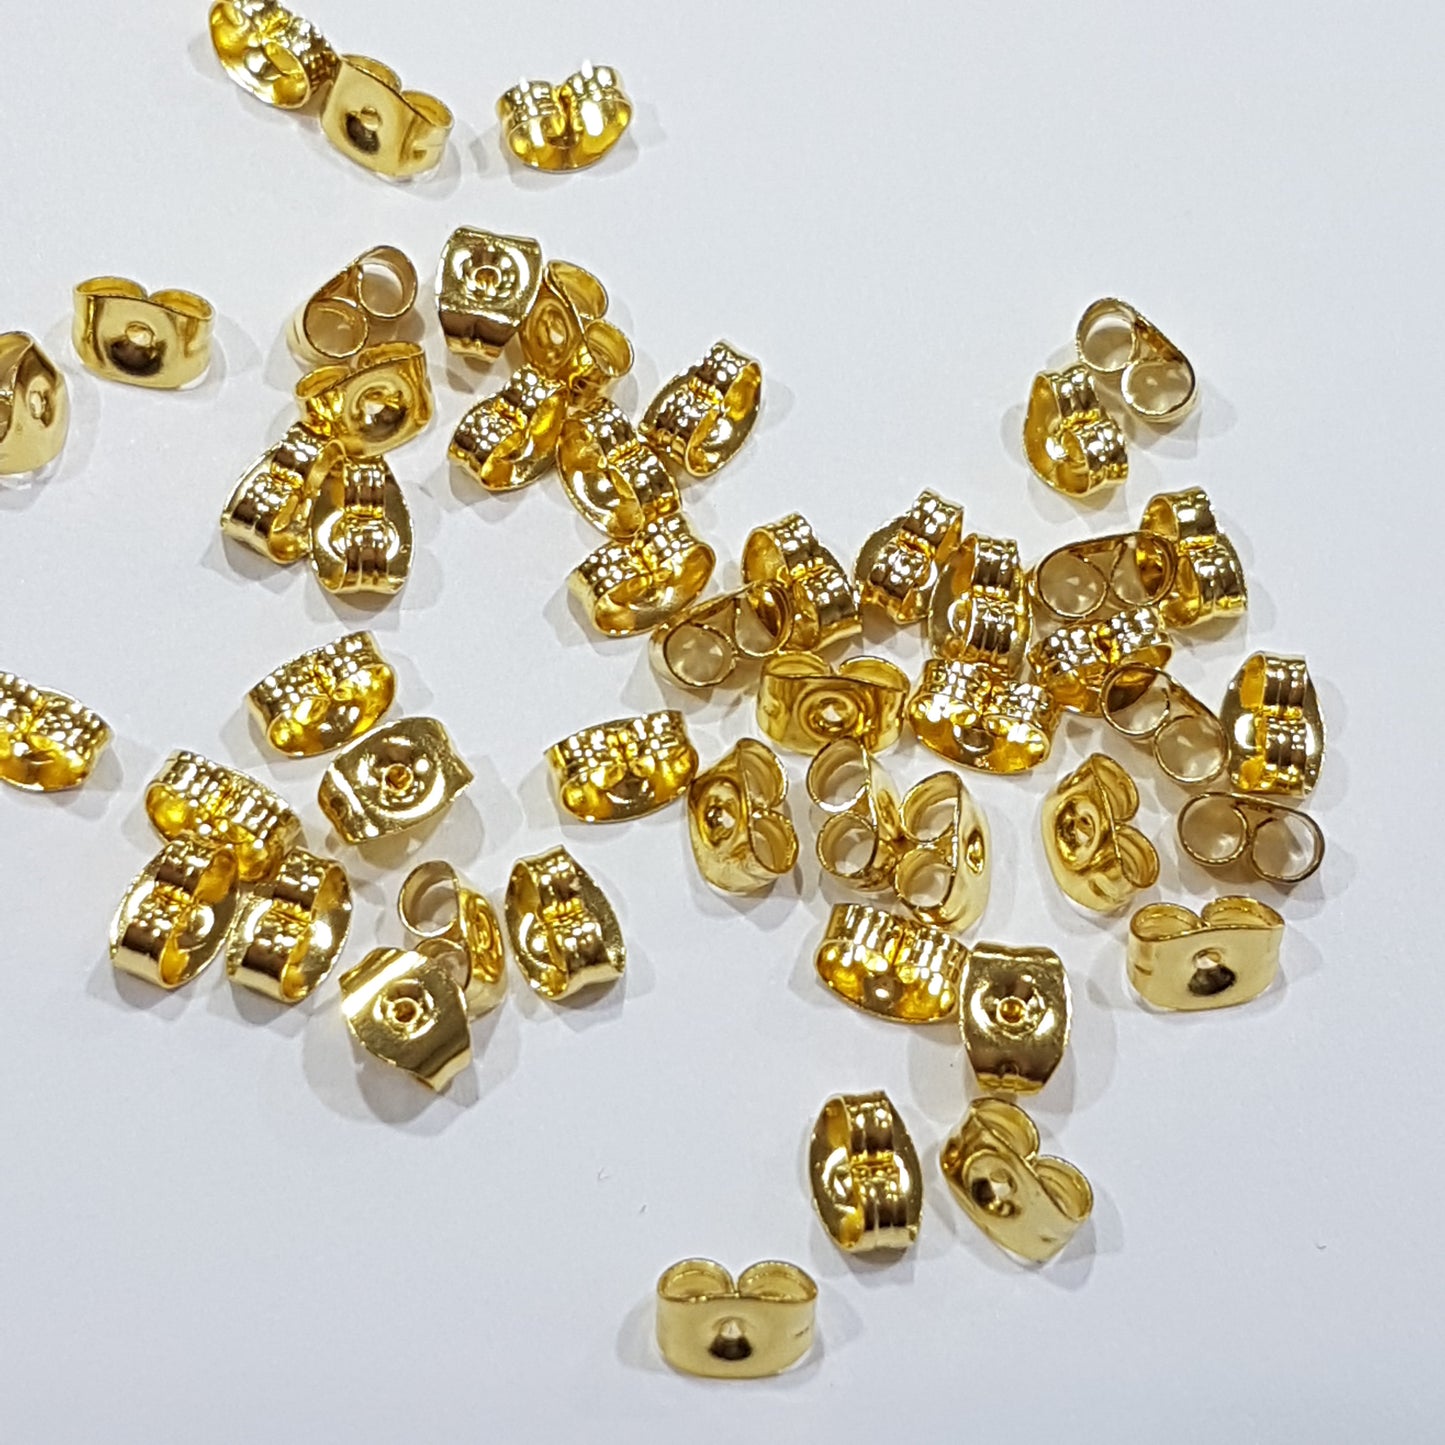 50pc Stainless Steel Gold Earring Backs